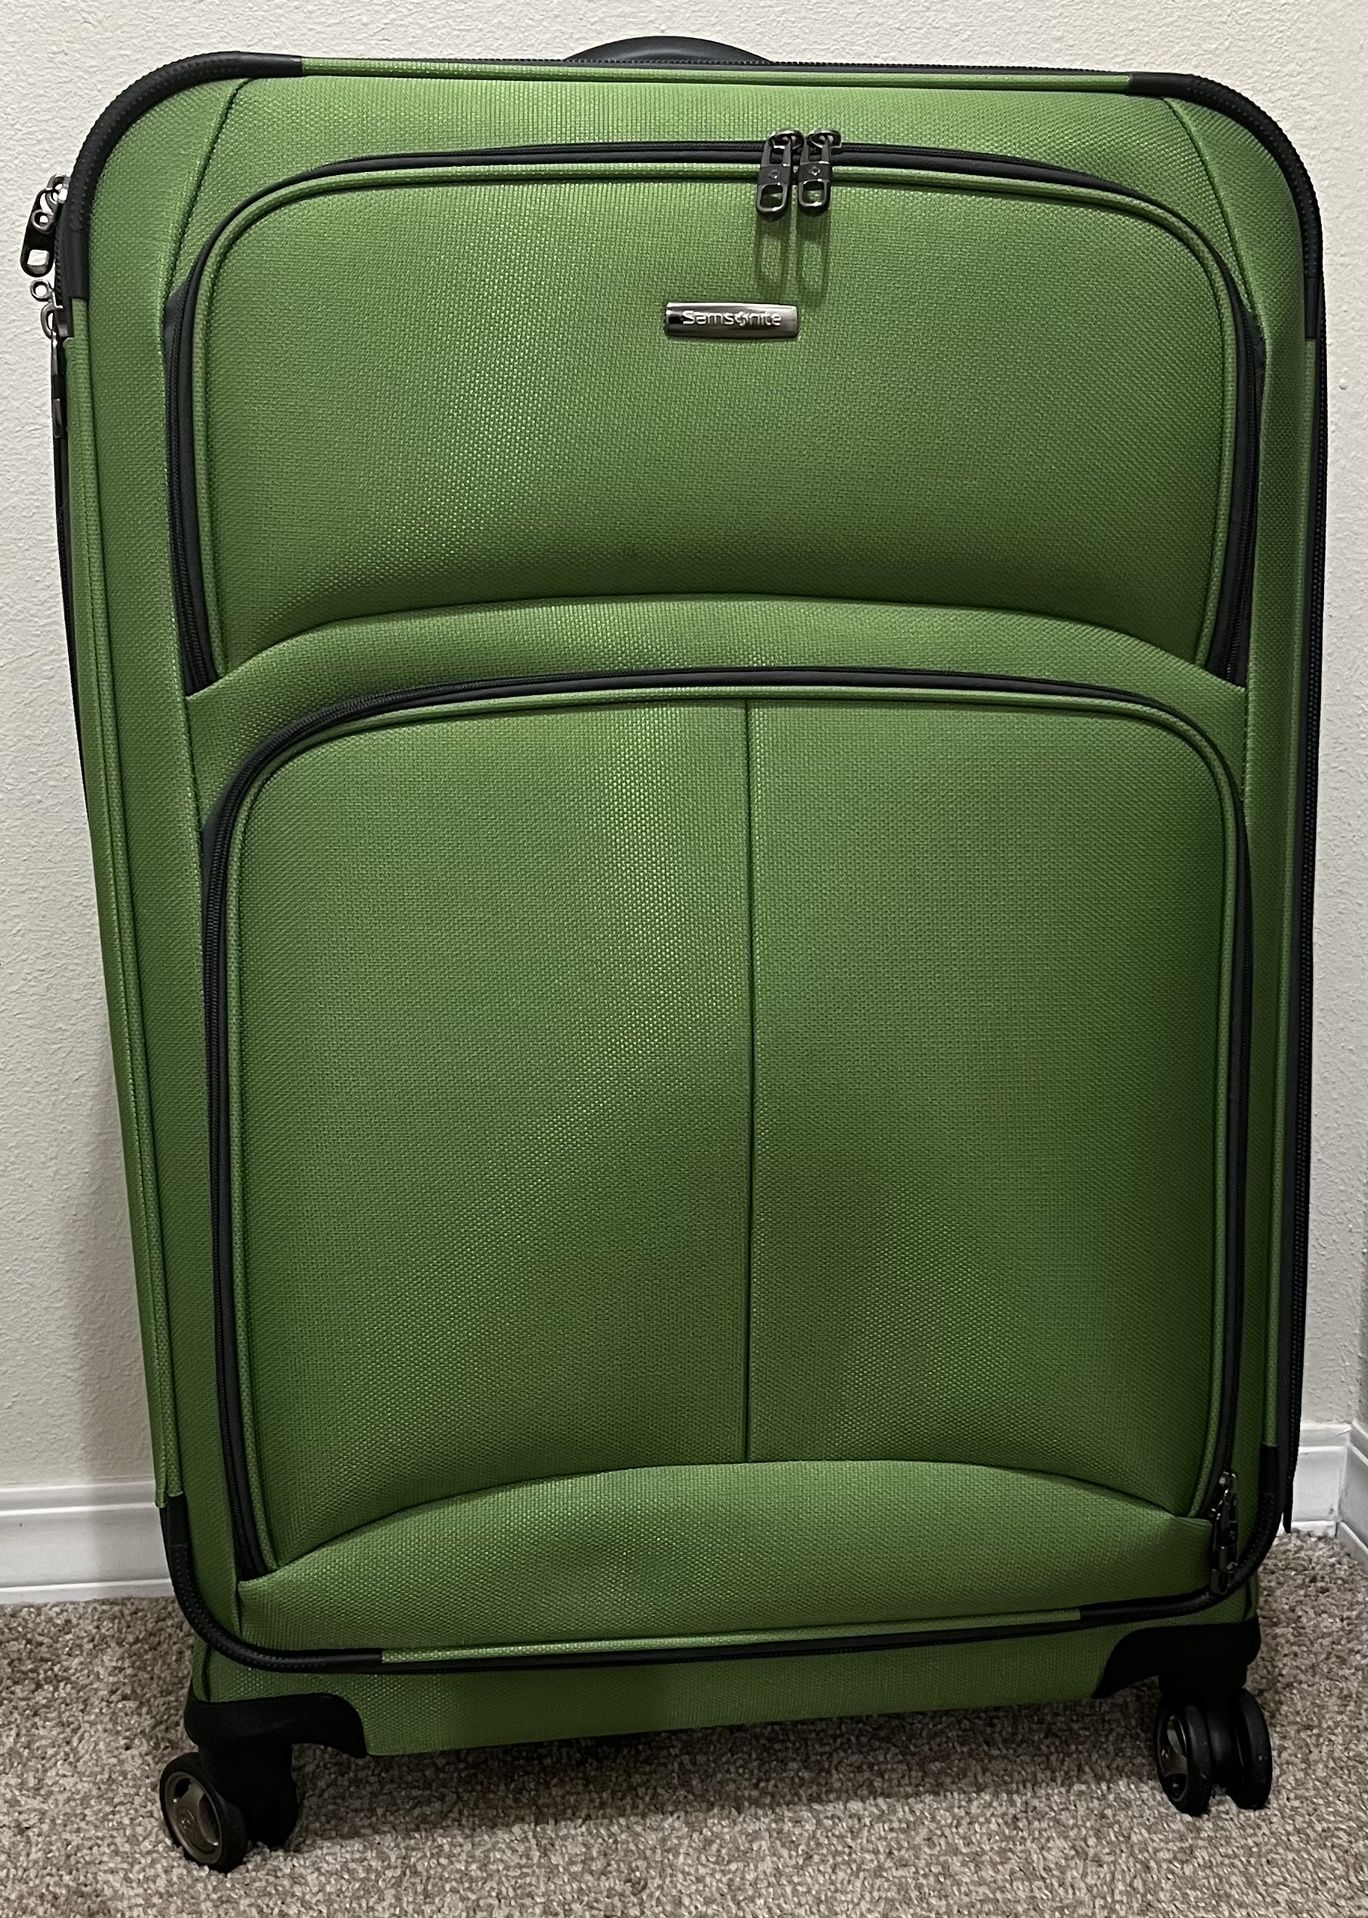 Samsonite Luggage Suitcase